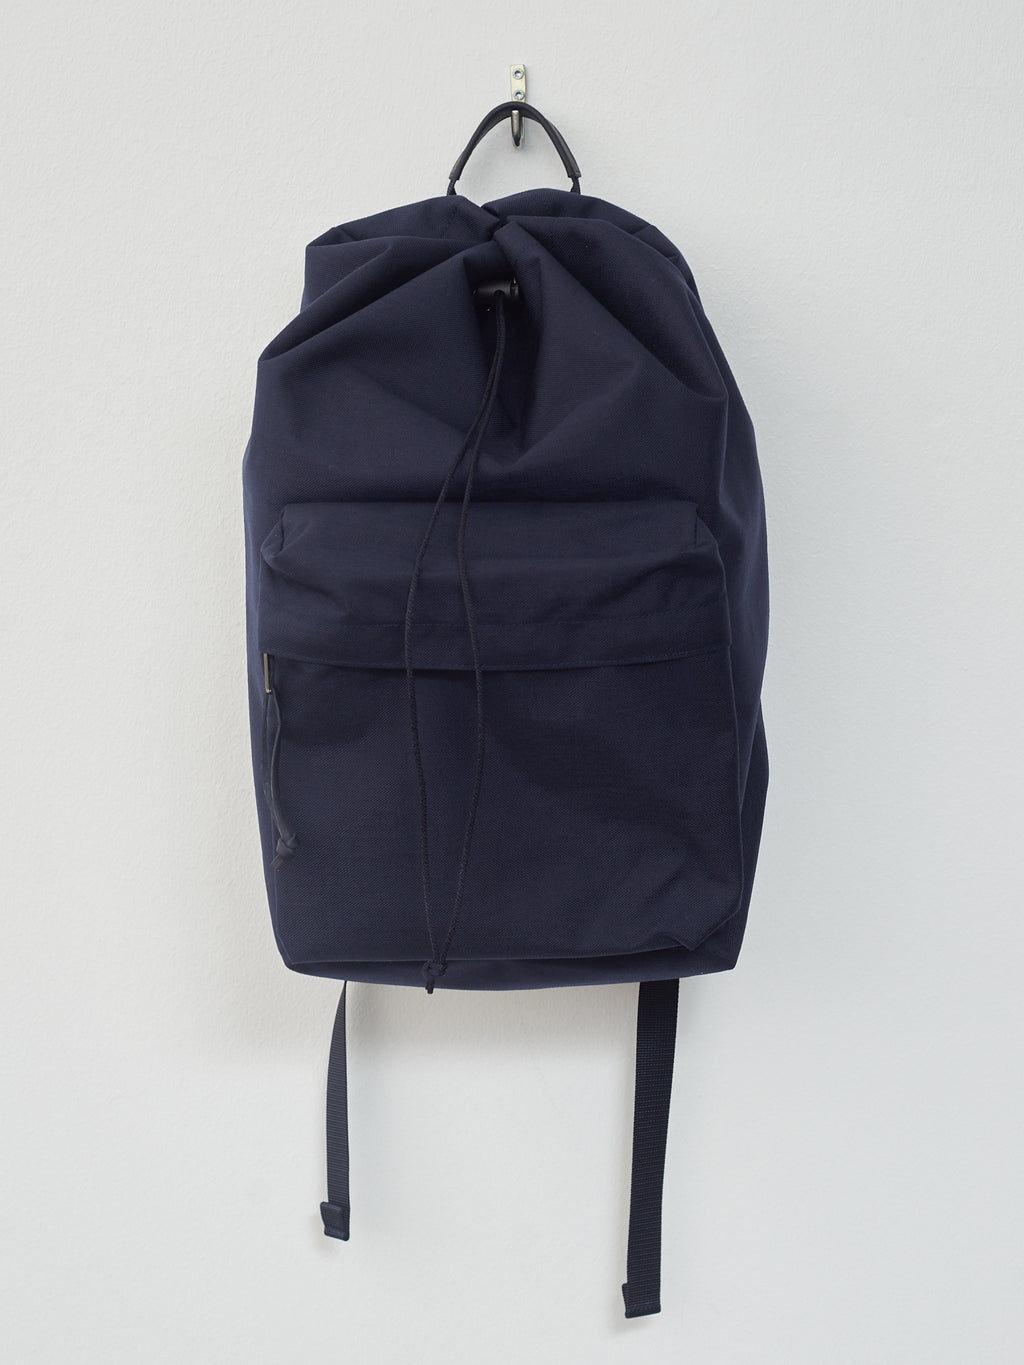 Namu Shop - Aeta Backpack DC M - Navy